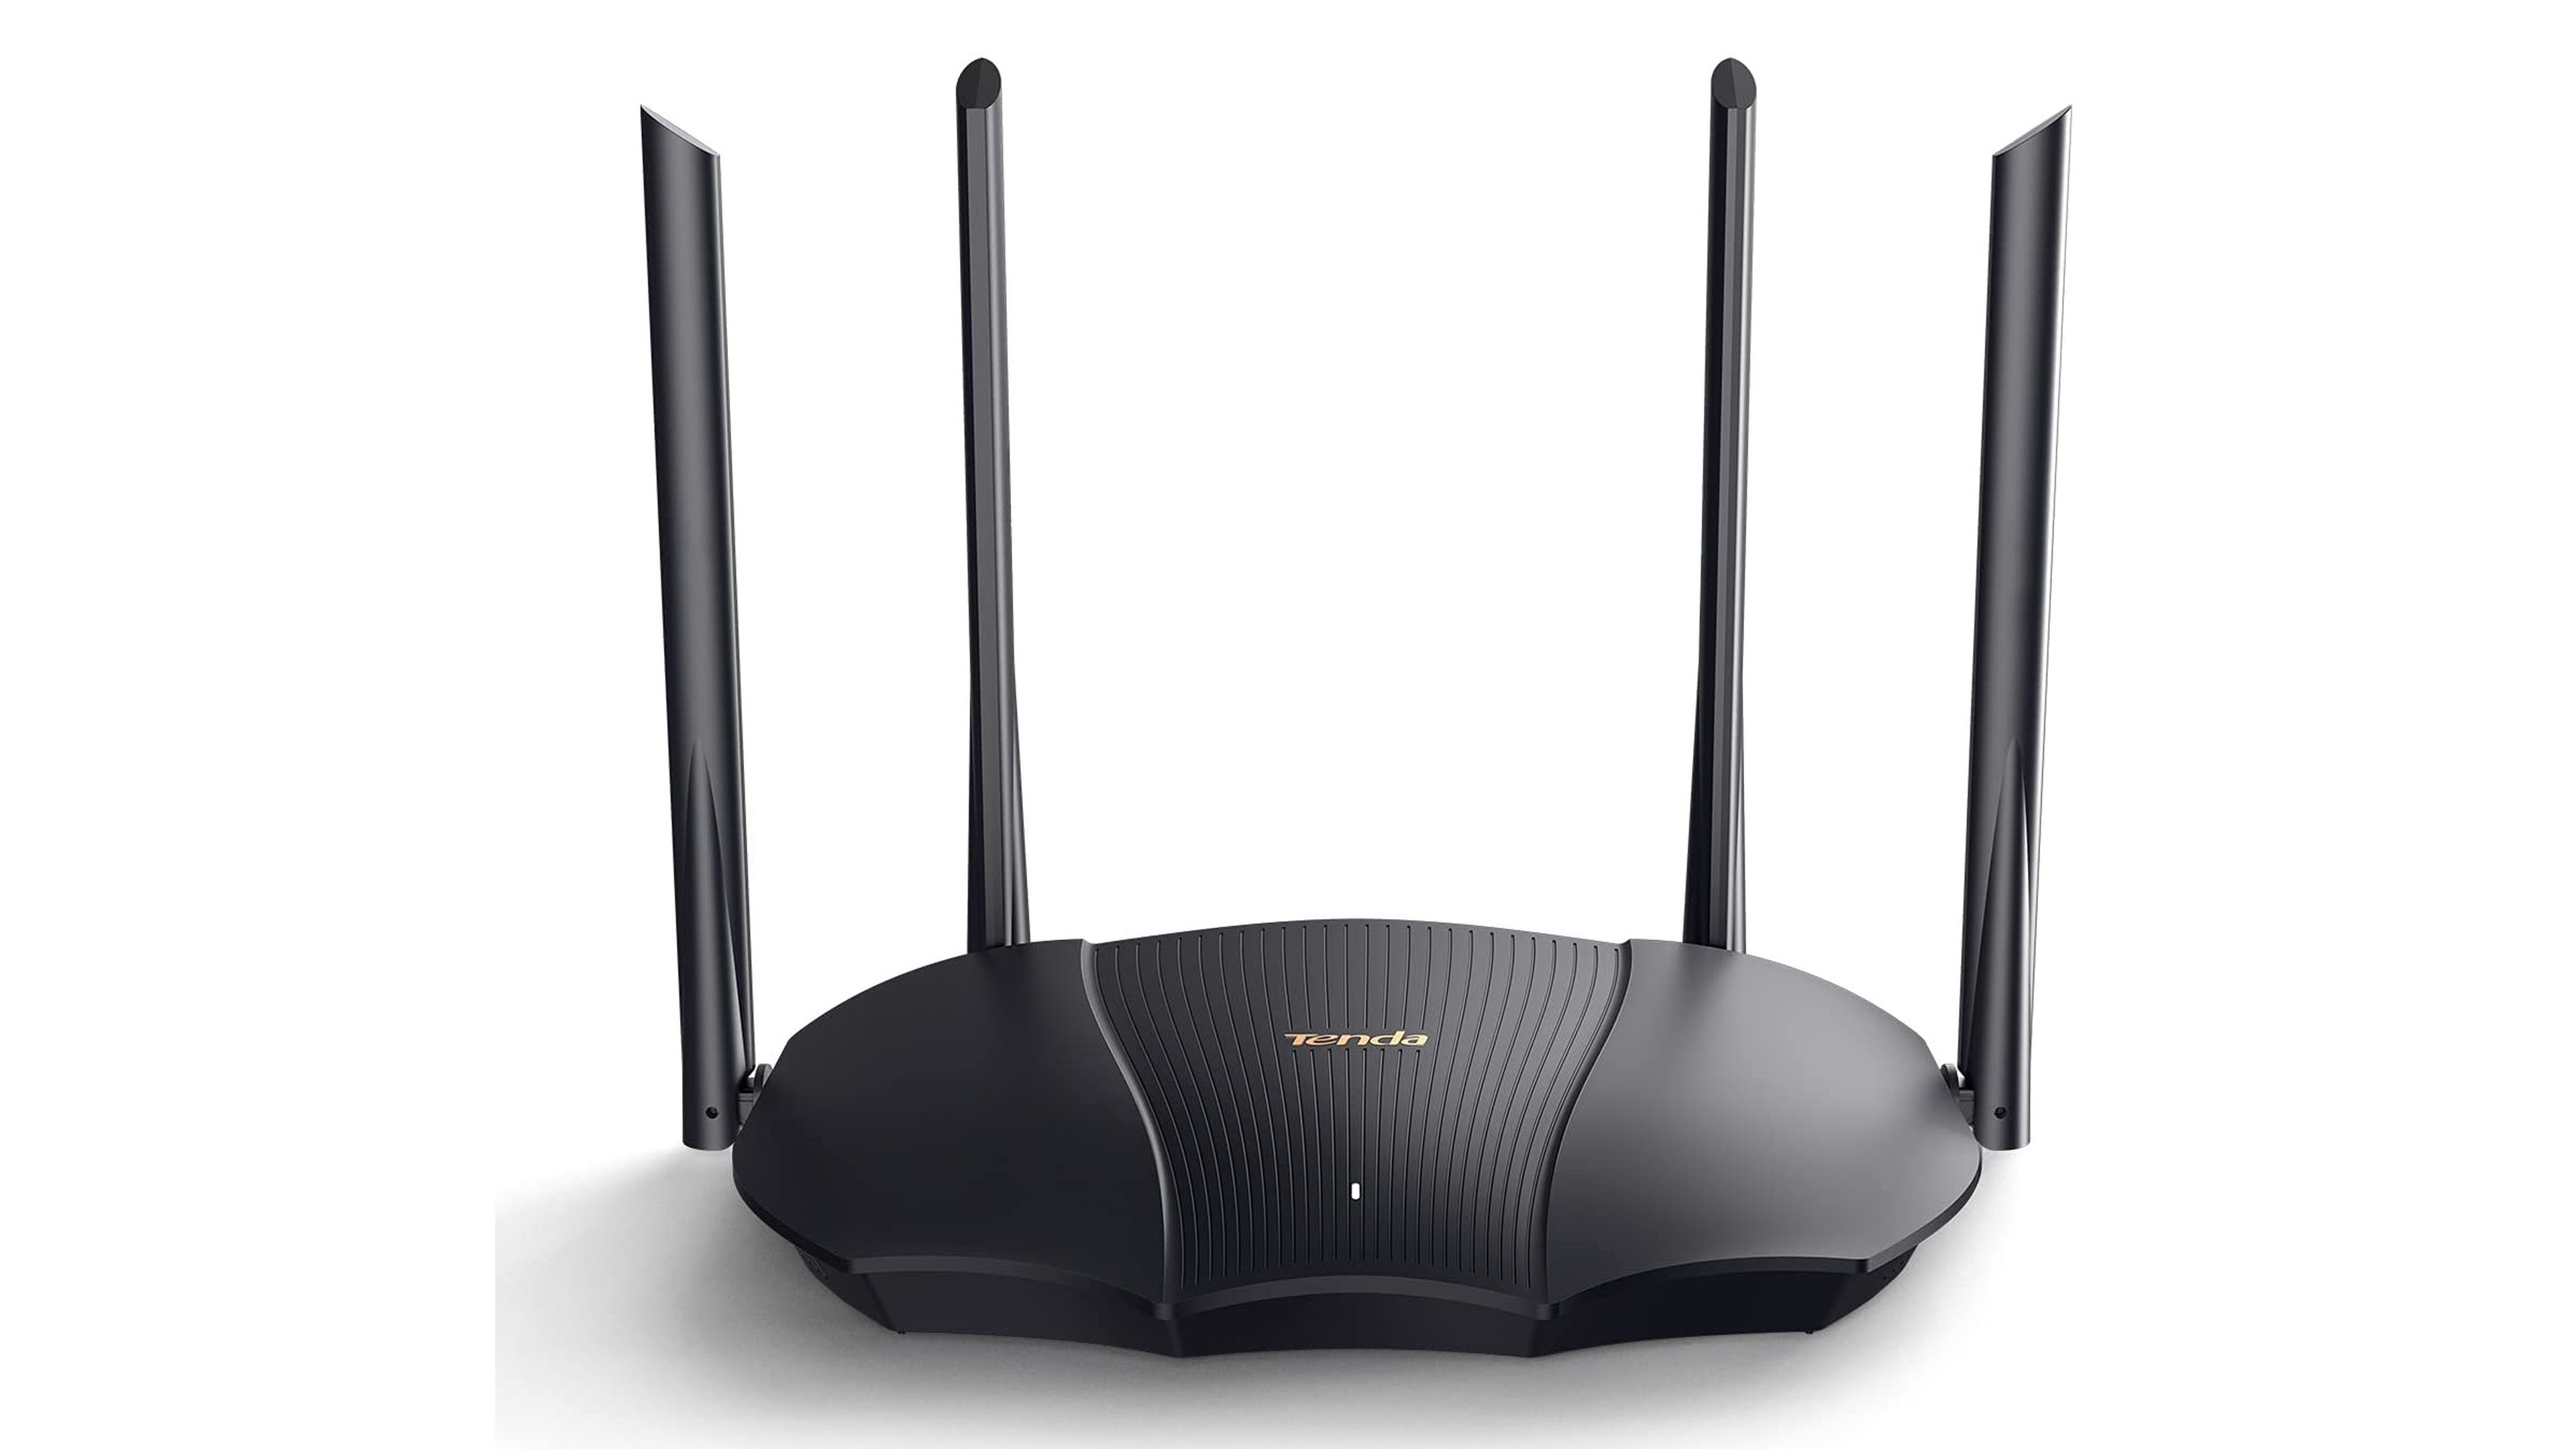 Comienza el despliegue del router Smart WiFi 6 de Movistar: precios y  condiciones